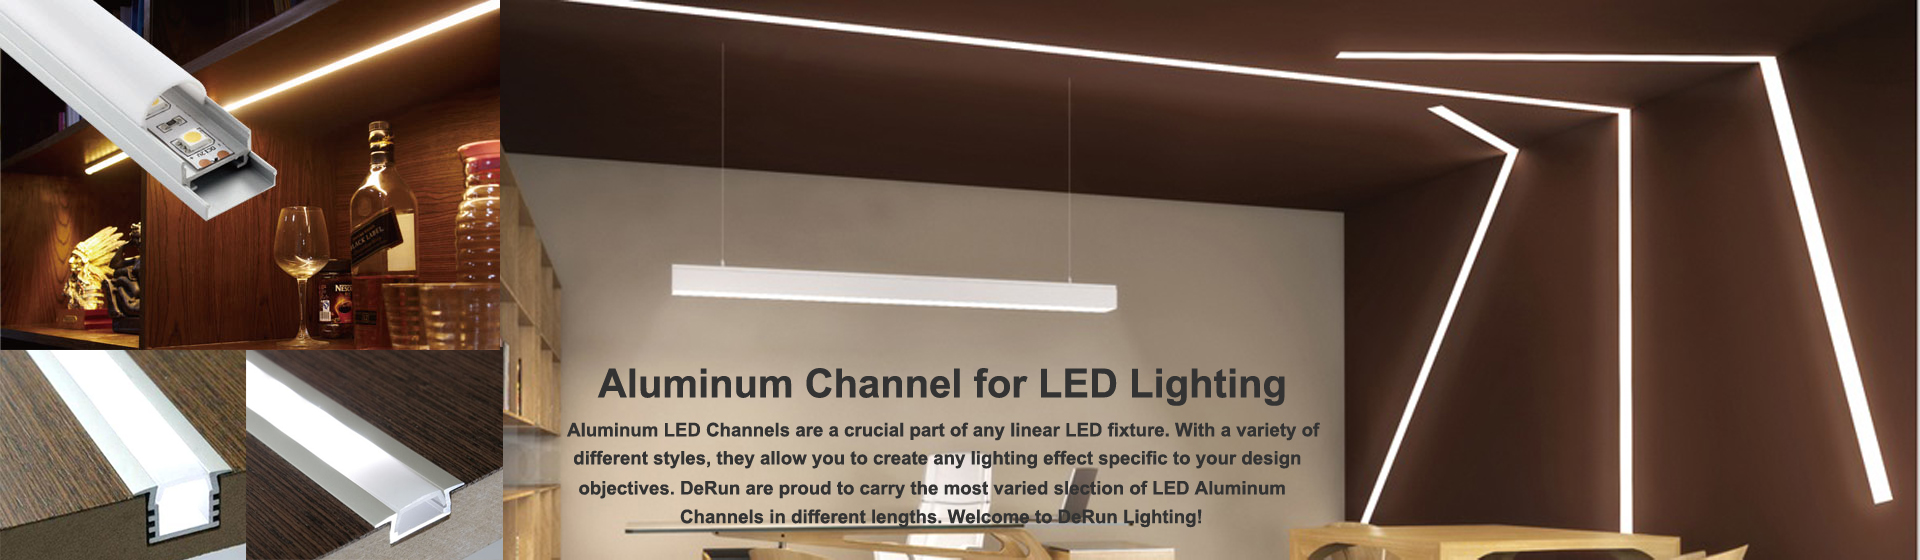 saluran led aluminium - Lampu Linear LED